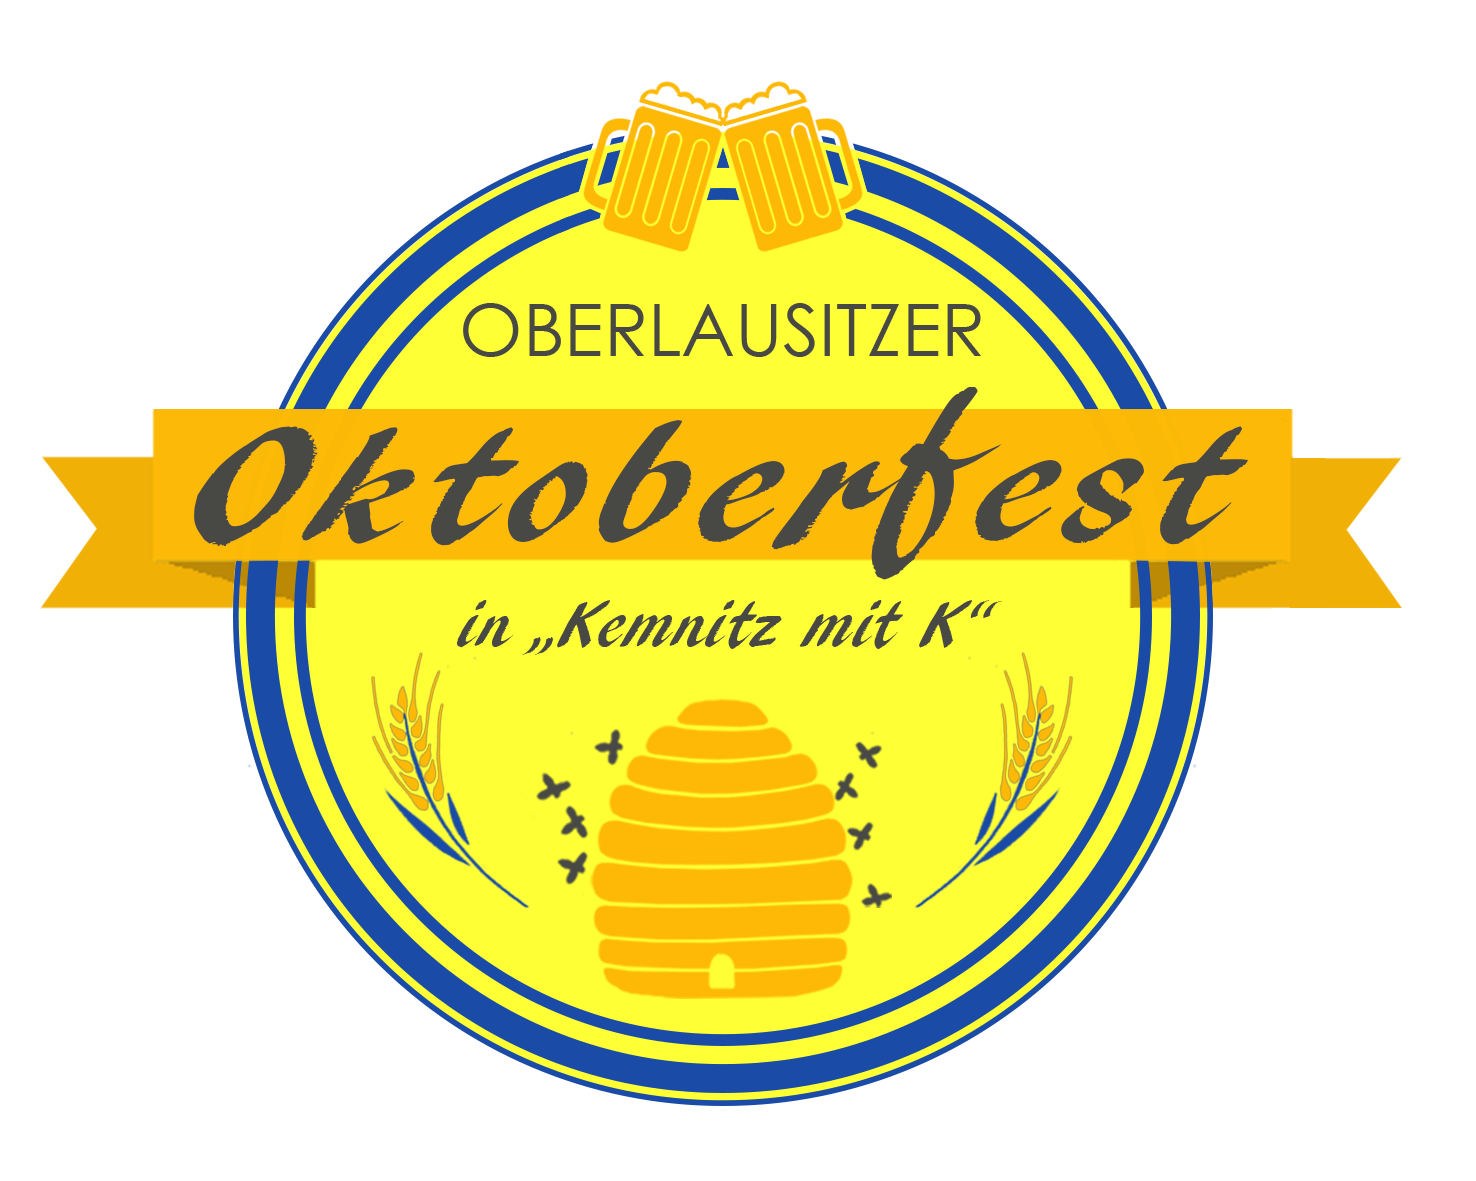 Herzlich Willkommen beim Oberlausitzer Oktoberfest Kemnitz